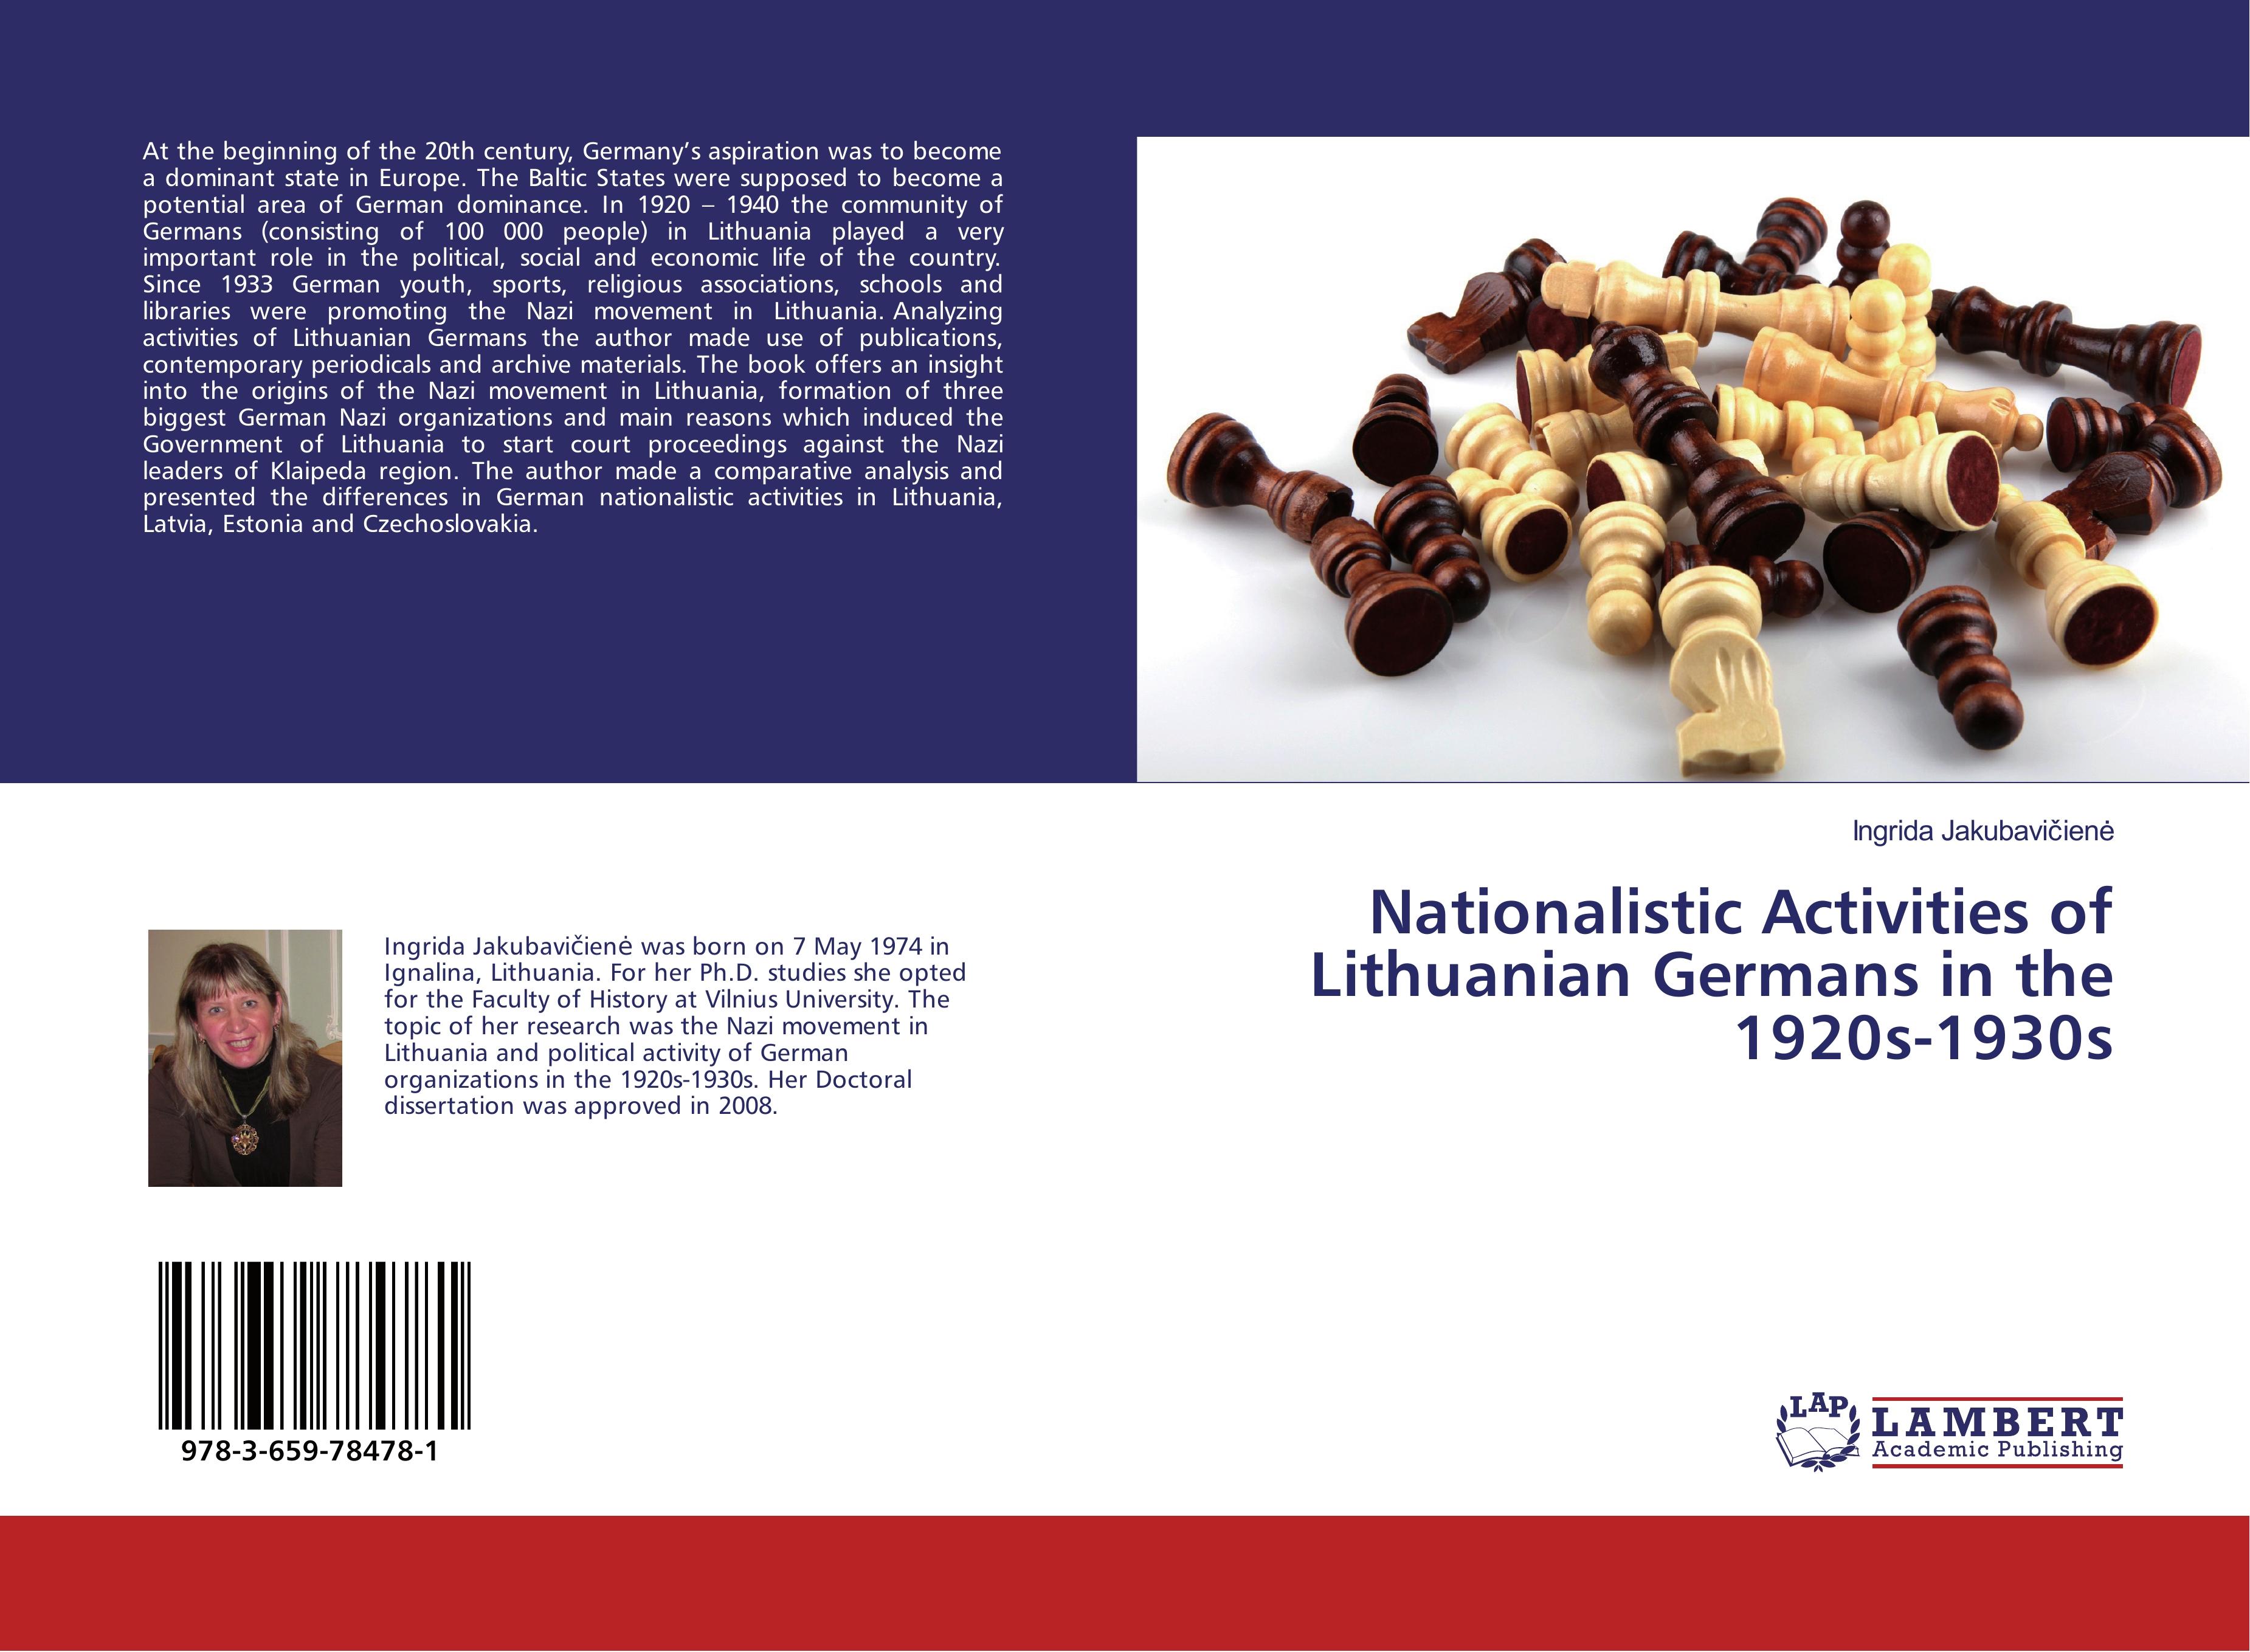 Nationalistic Activities of Lithuanian Germans in the 1920s-1930s - Jakubaviciene, Ingrida